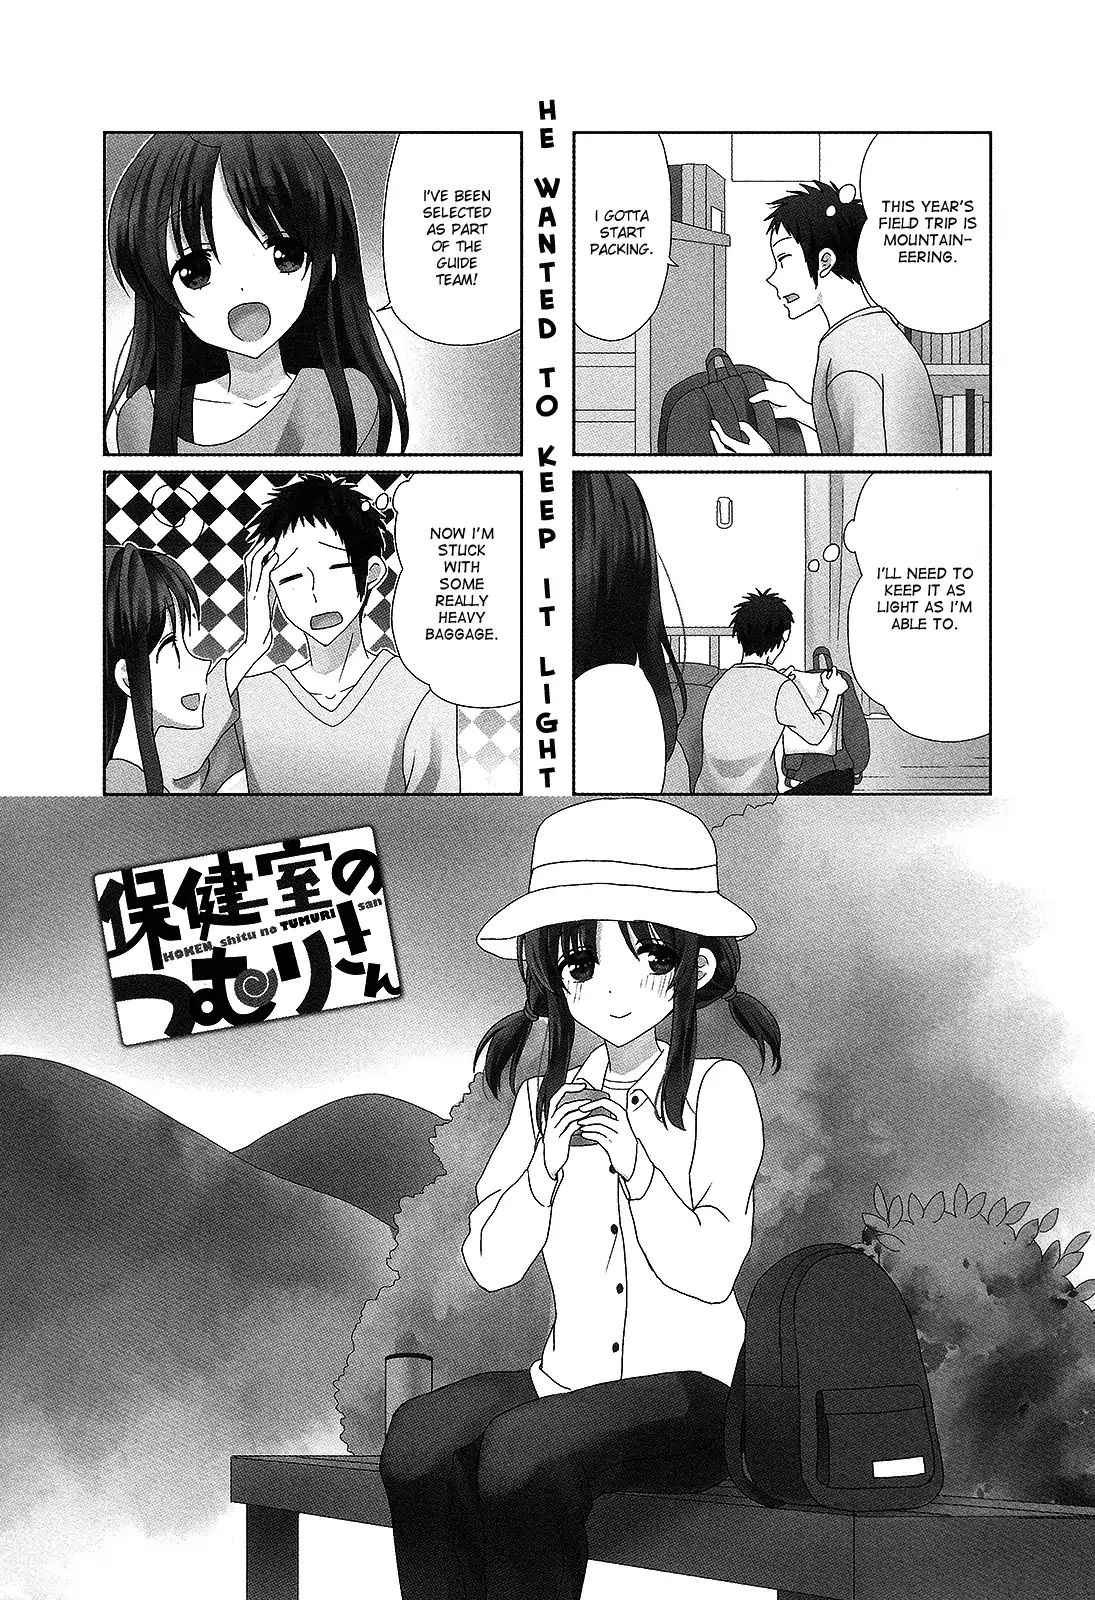 Hokenshitsu no Tsumuri-san Vol.2 Chapter 26